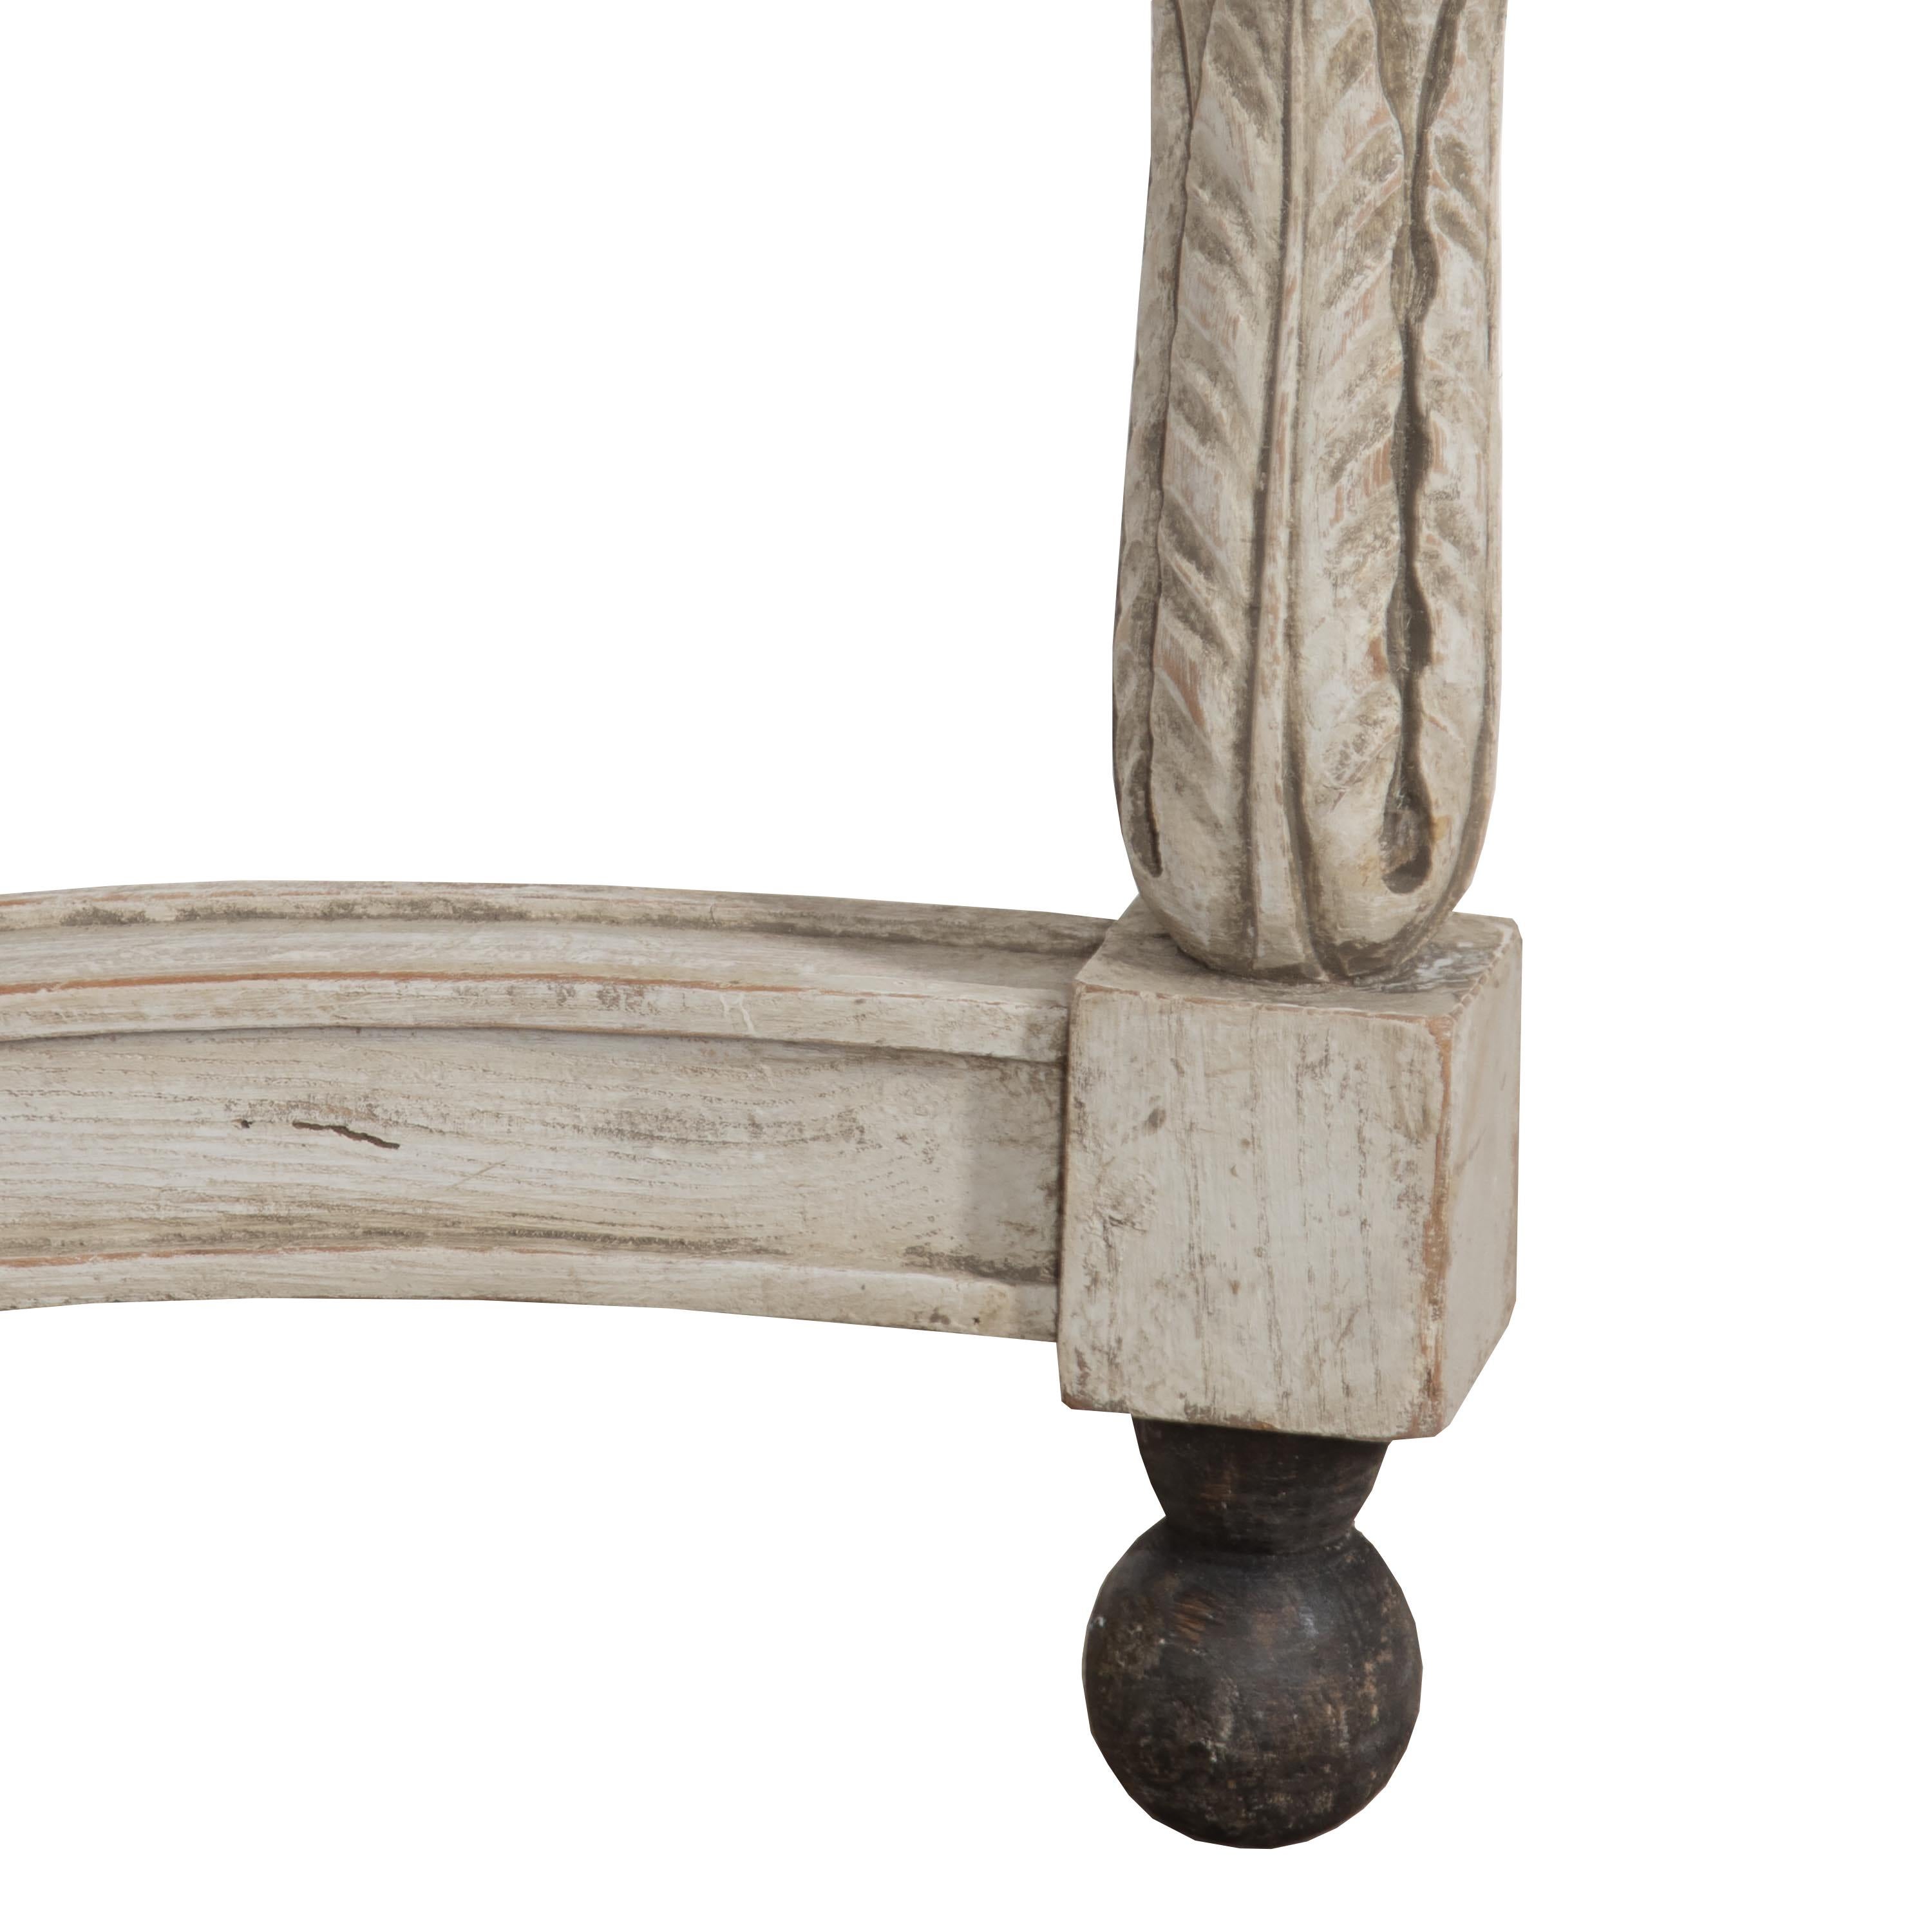 Paire de consoles Louis Seize du XVIIIe siècle.
Avec des détails décoratifs sculptés à l'avant et des pieds en forme reposant sur des feuilles d'acanthe et des pieds en boule.
Les capots ont été repeints mais la carrosserie est en peinture